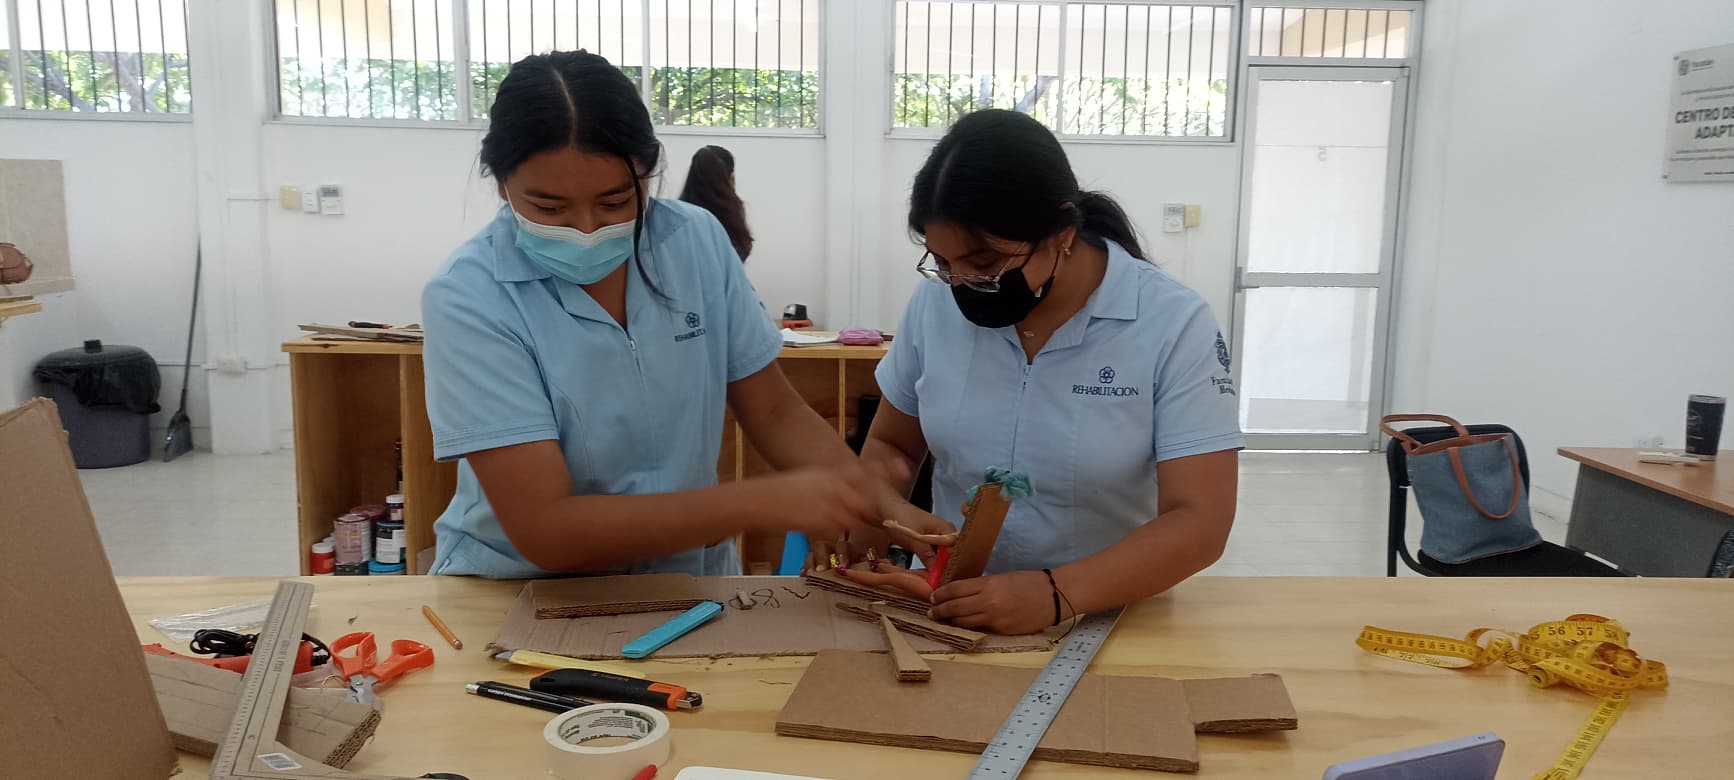 Dos estudiantes de rehabilitación de la Universidad Autónoma de Yucatán cortan cartón y miden una silla de cartón para una muñeca